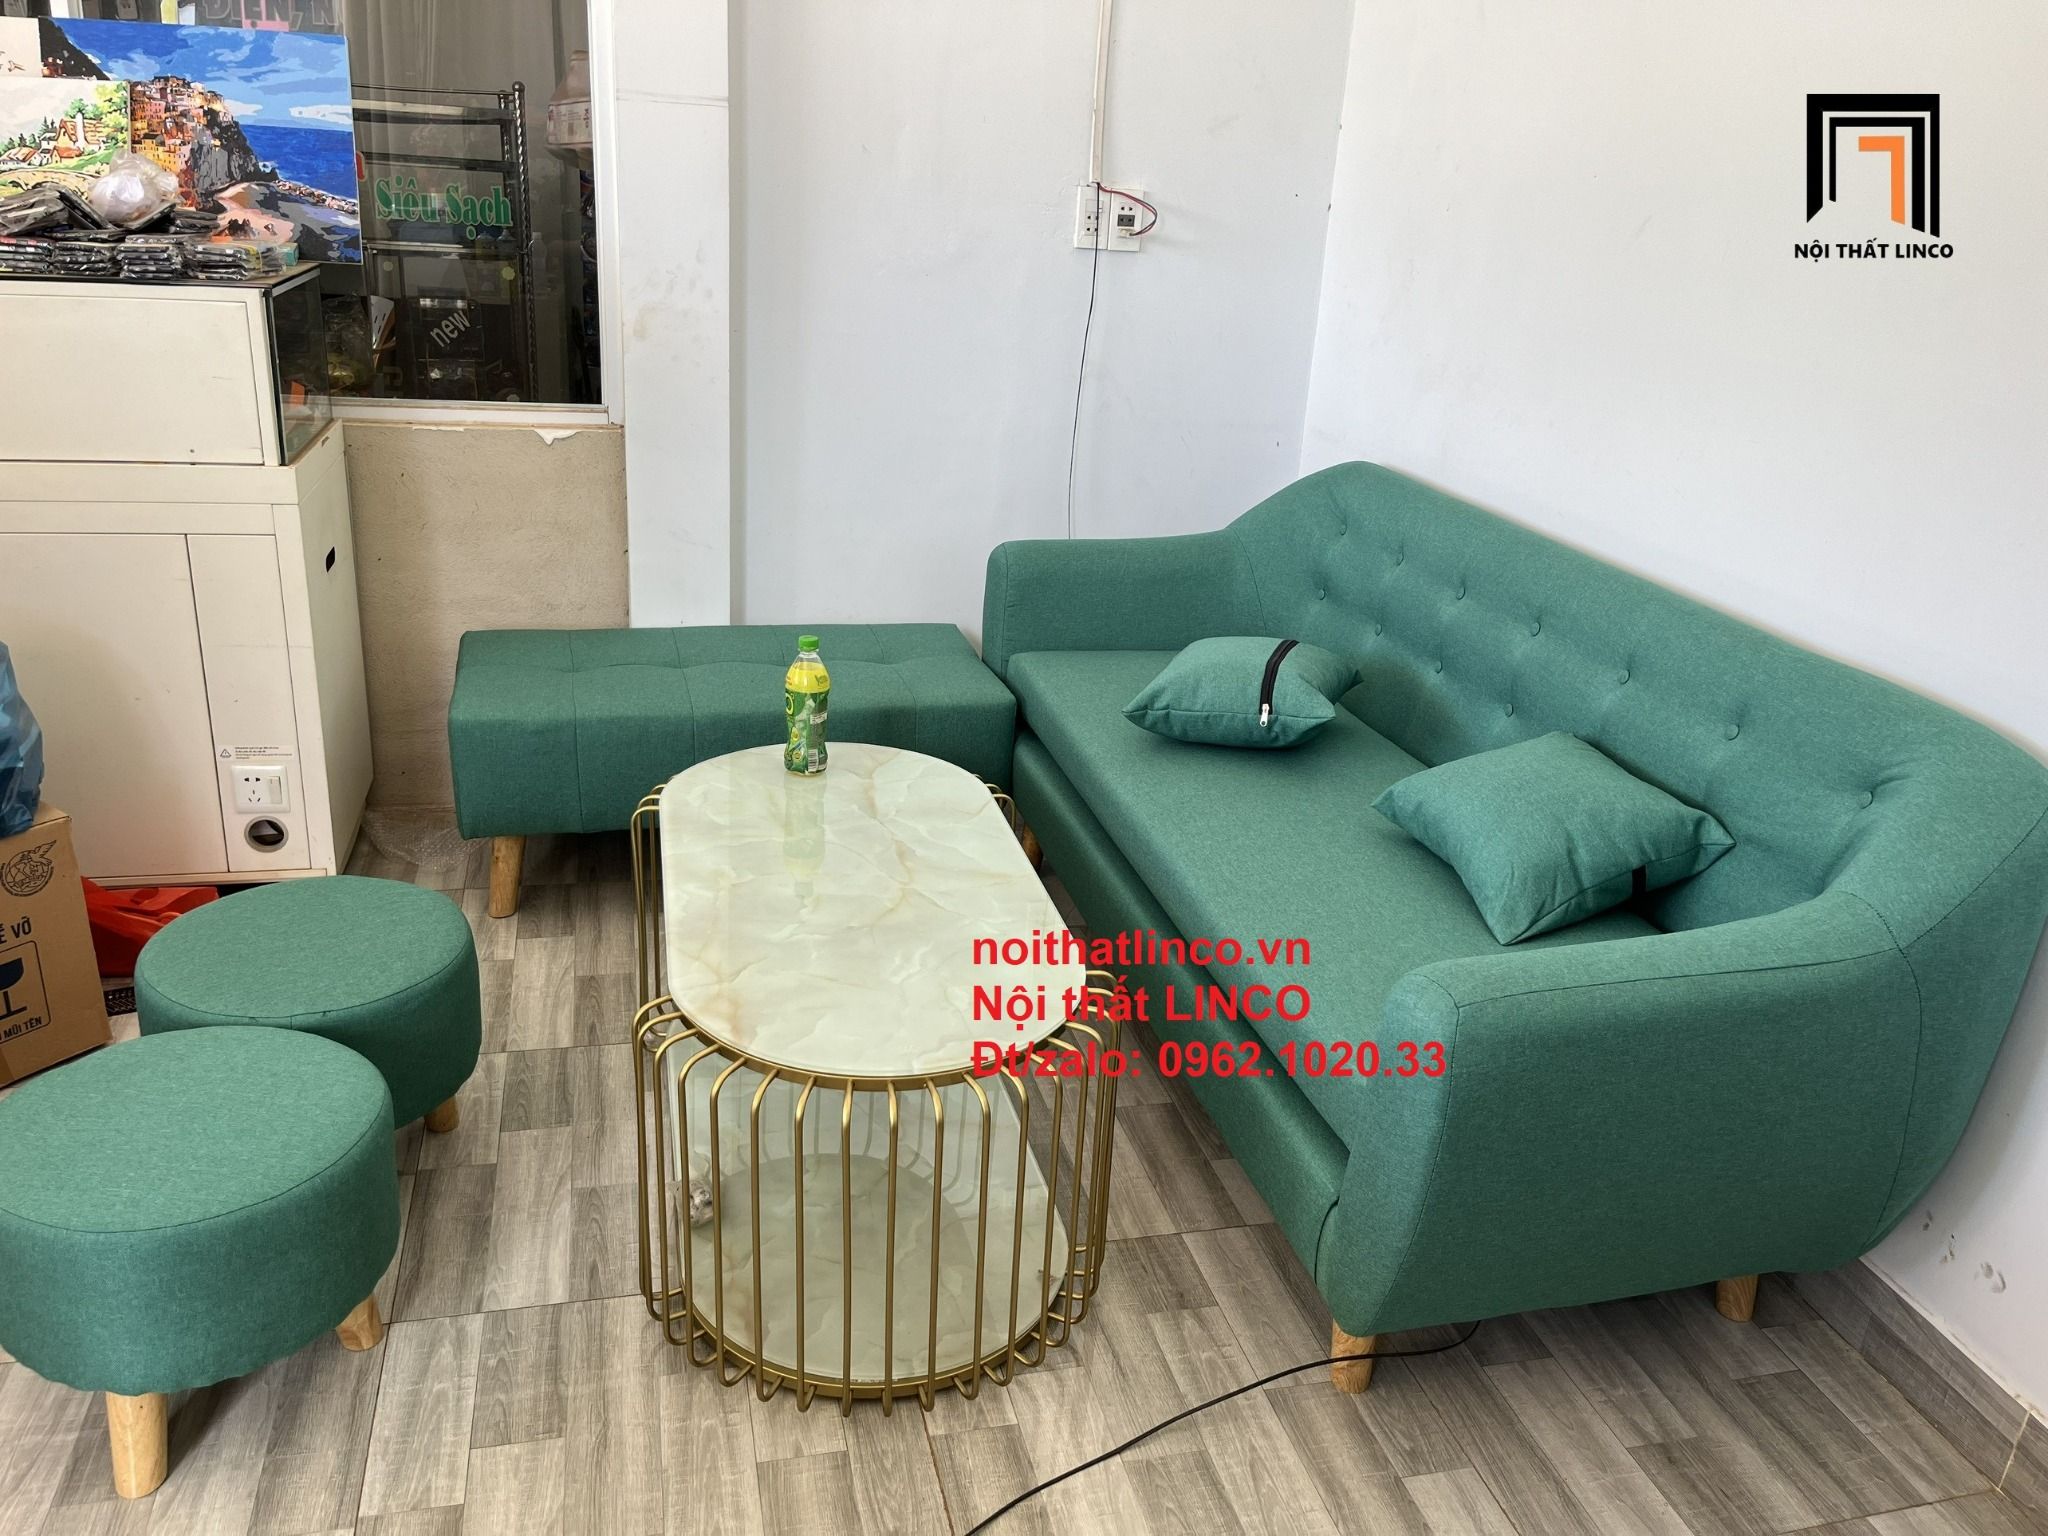  Ghế sofa văng băng dài 1m9 giá rẻ BGN màu xanh ngọc xinh xắn 